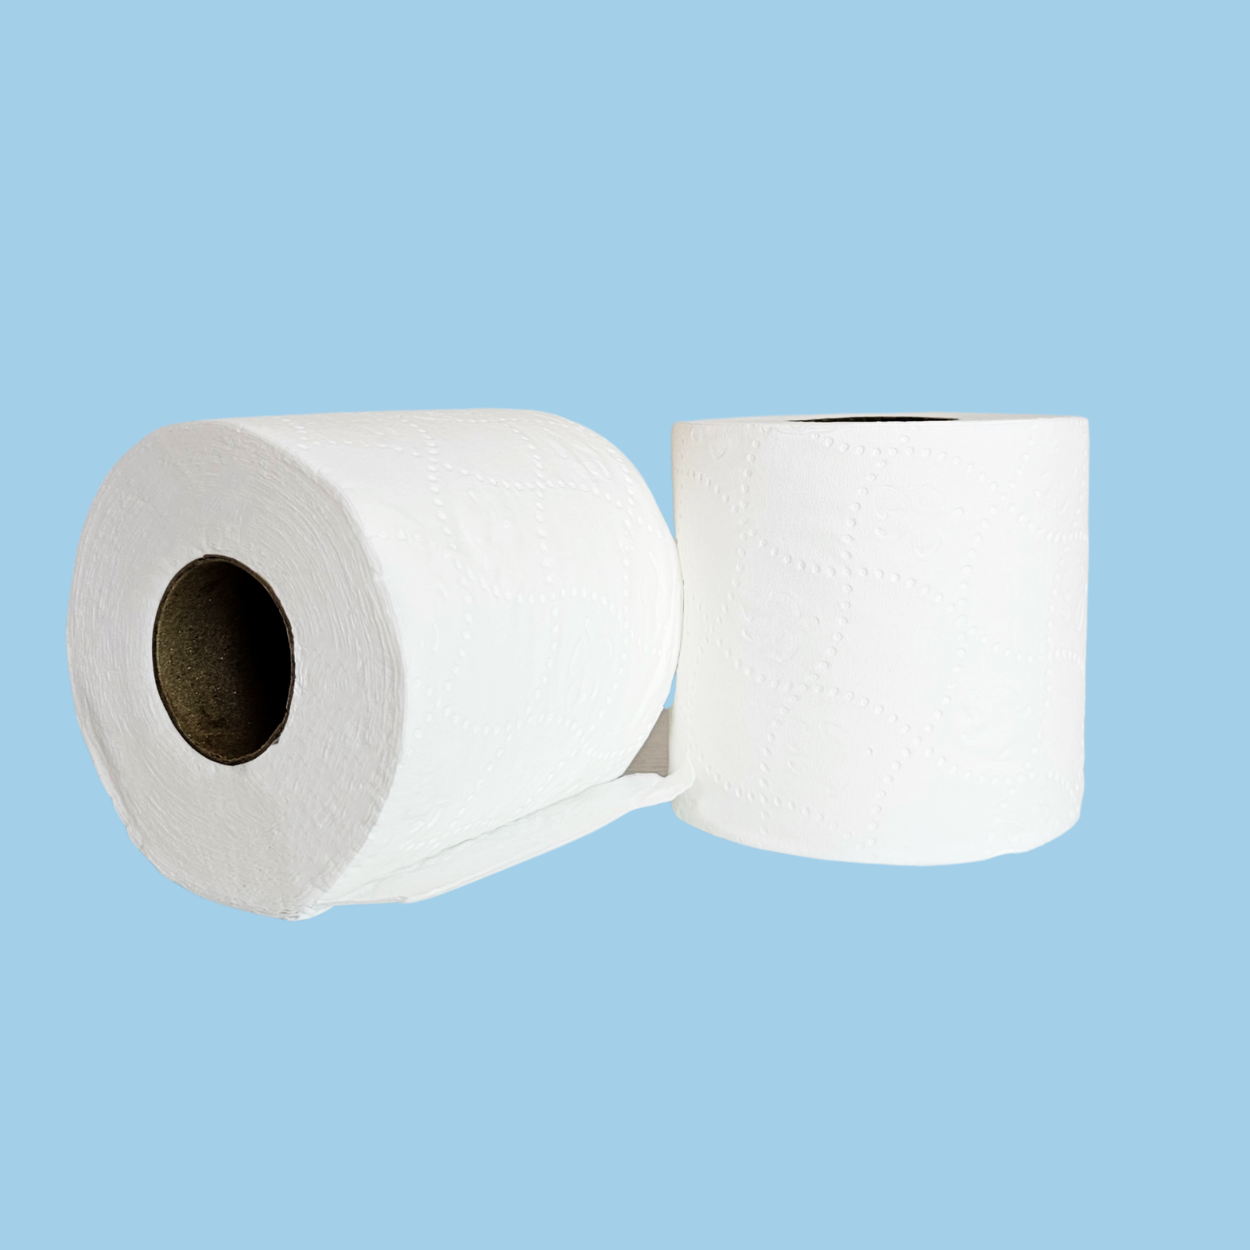 48 Premium Super Soft Toilet Rolls